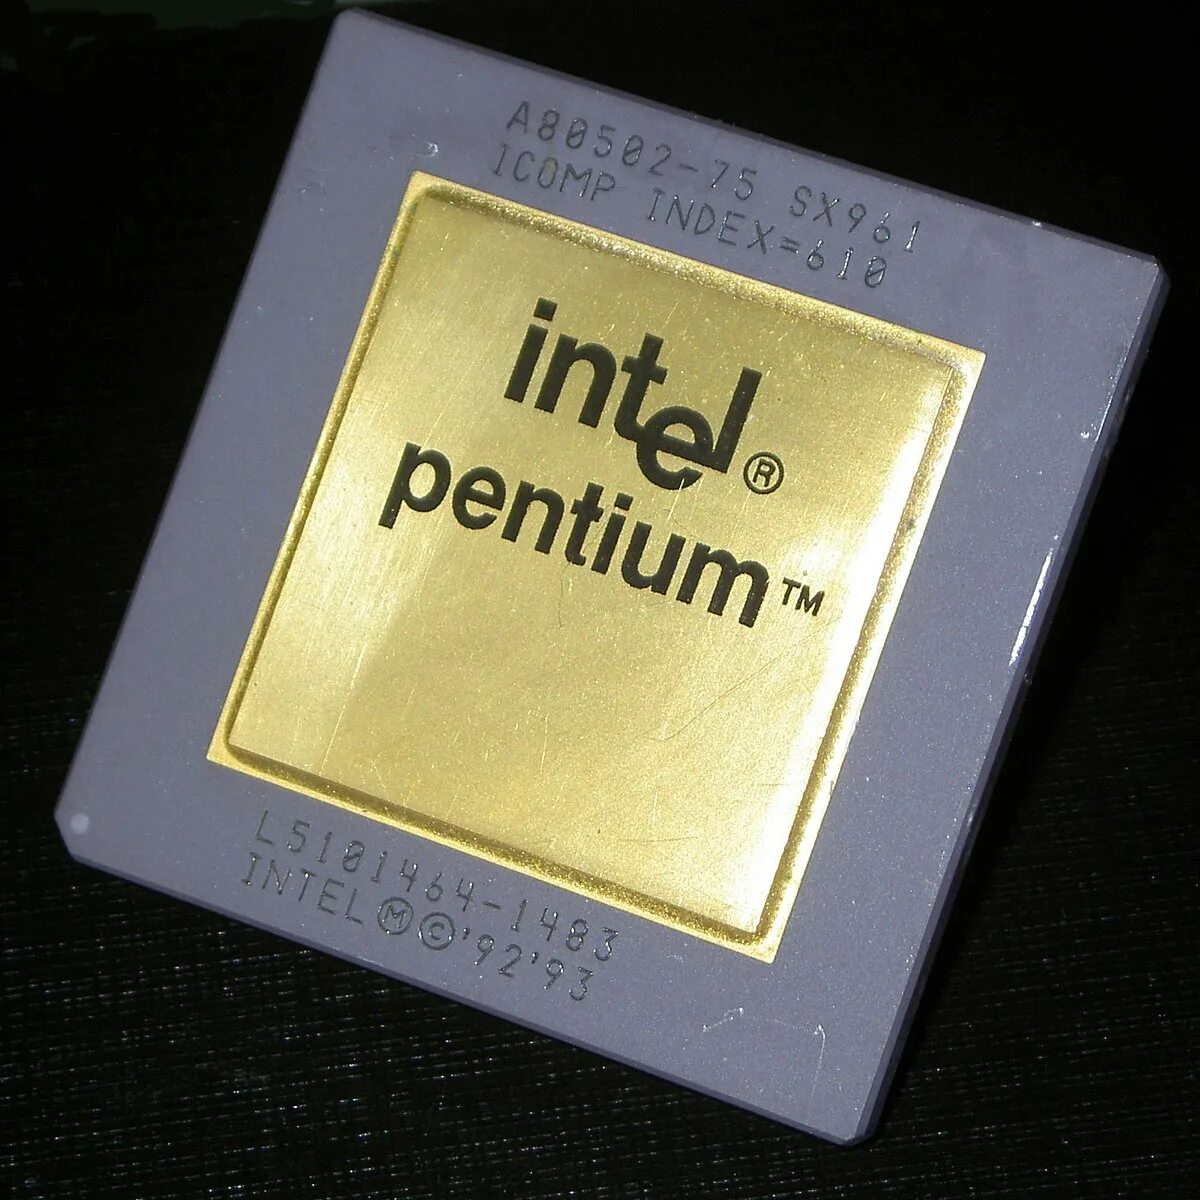 Интел коре пентиум. Процессор Pentium Intel 80586 1993. Процессор Intel Pentium 1. Микропроцессор Pentium 1993 года. Пентиум 1 1993.